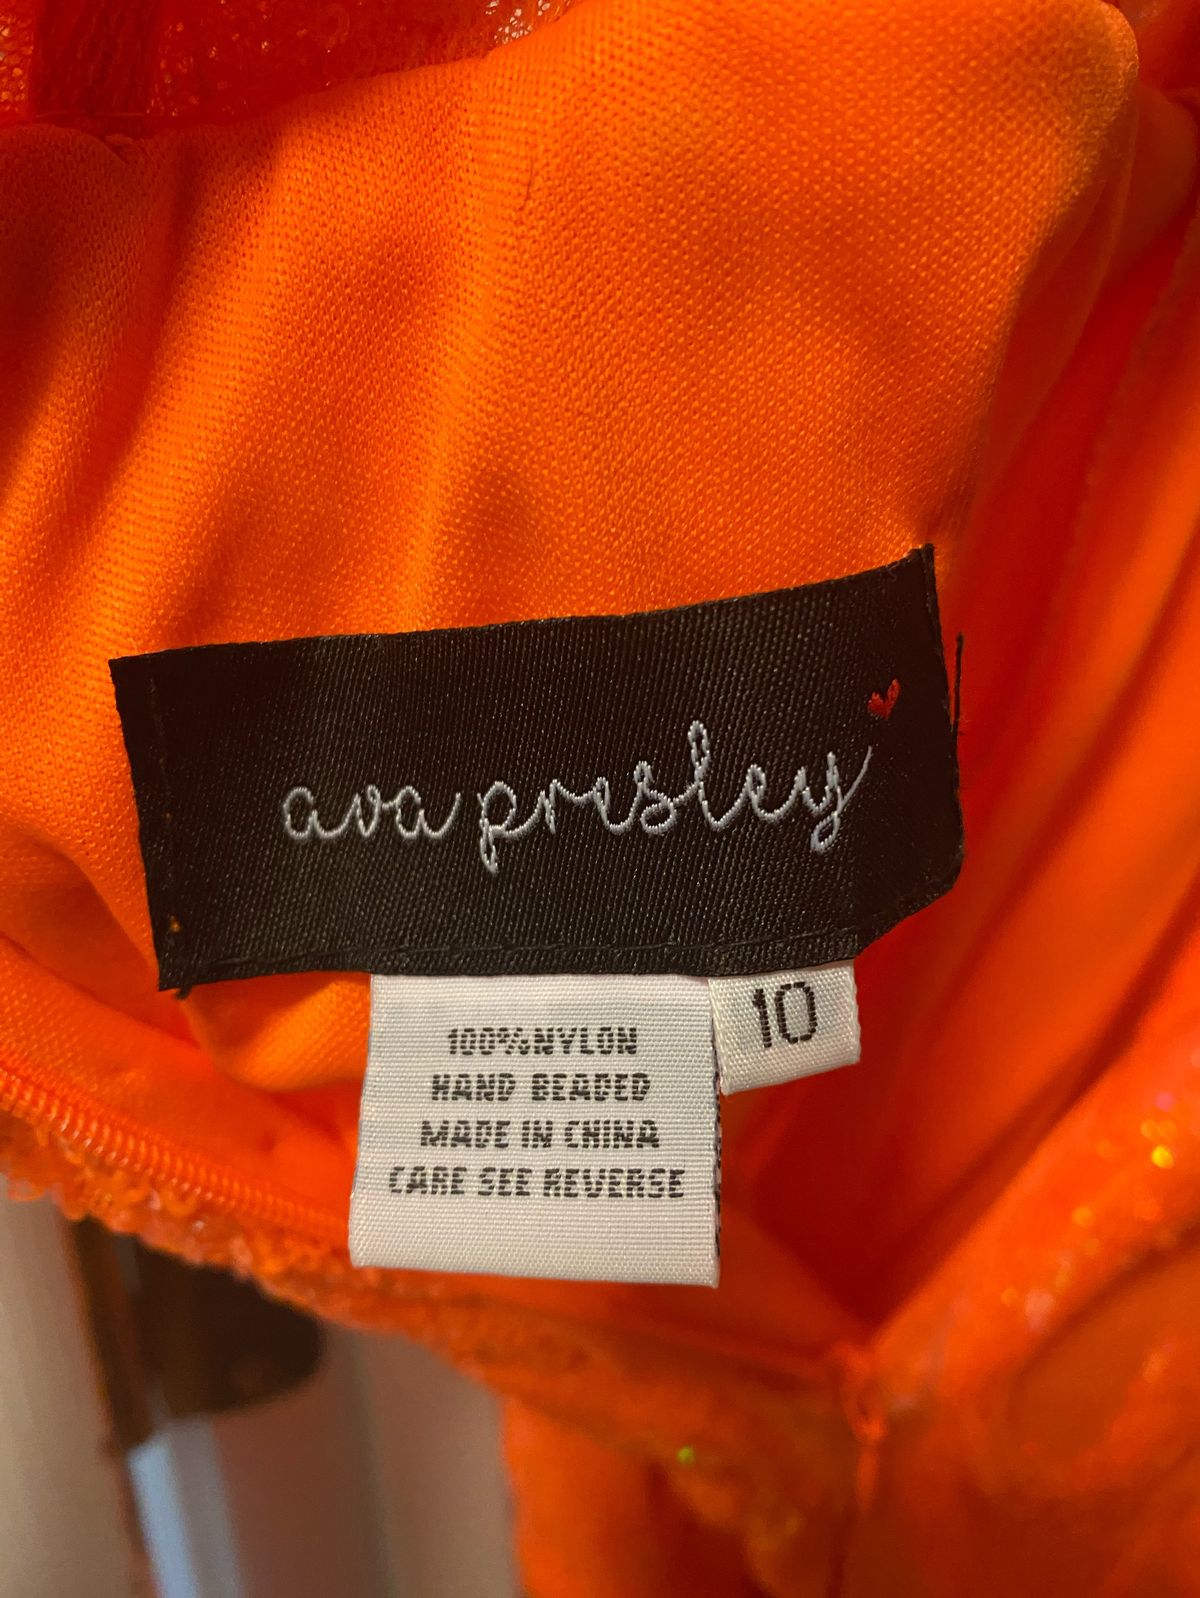 Ava Presley Size 10 Prom Orange Side Slit Dress on Queenly